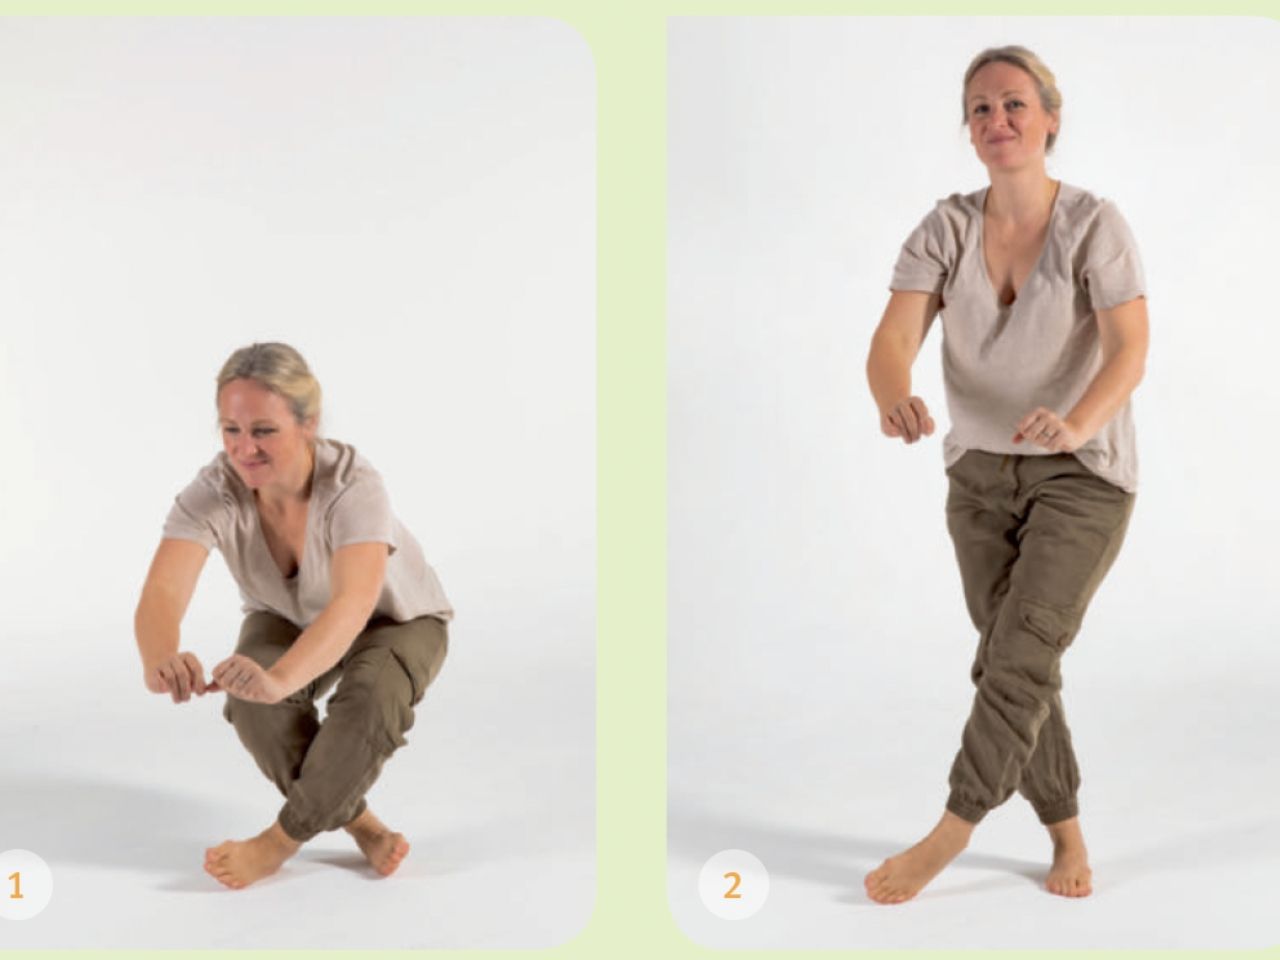 Trois images d'une femme effectuant un exercice de squat en démontrant la forme et la technique appropriées.